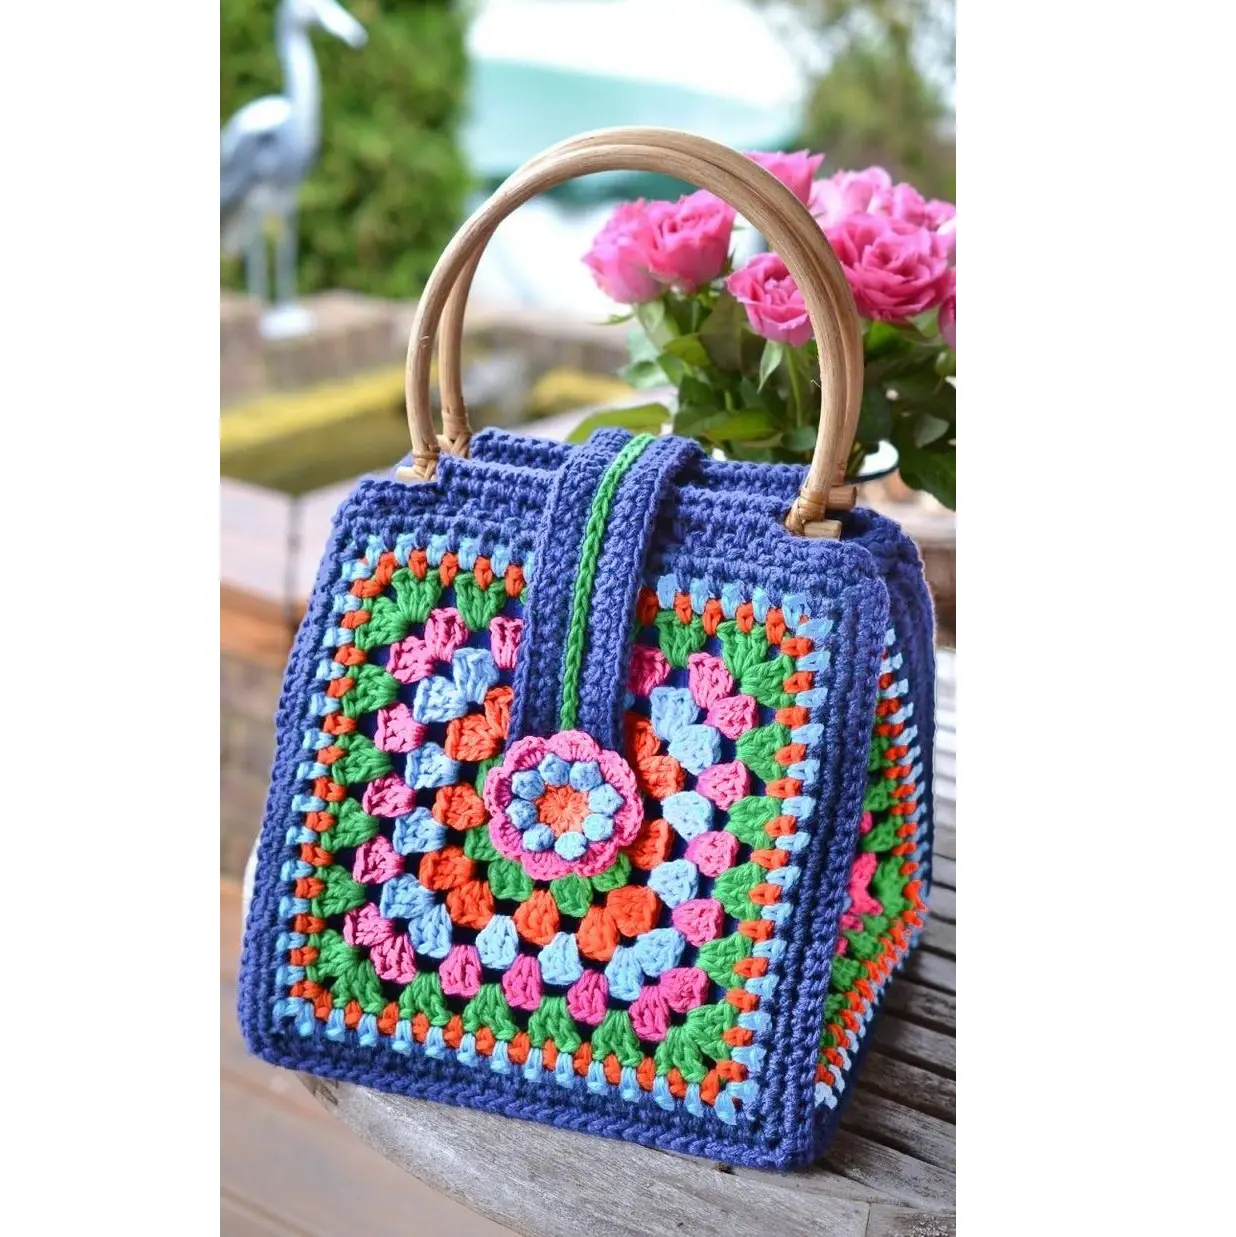 Kaufen Sie Crochet Square Handtasche Sommer Einkaufstasche Granny Square Bag Crochet Geldbörse mit Griff für den täglichen Freizeit-und Büro gebrauch